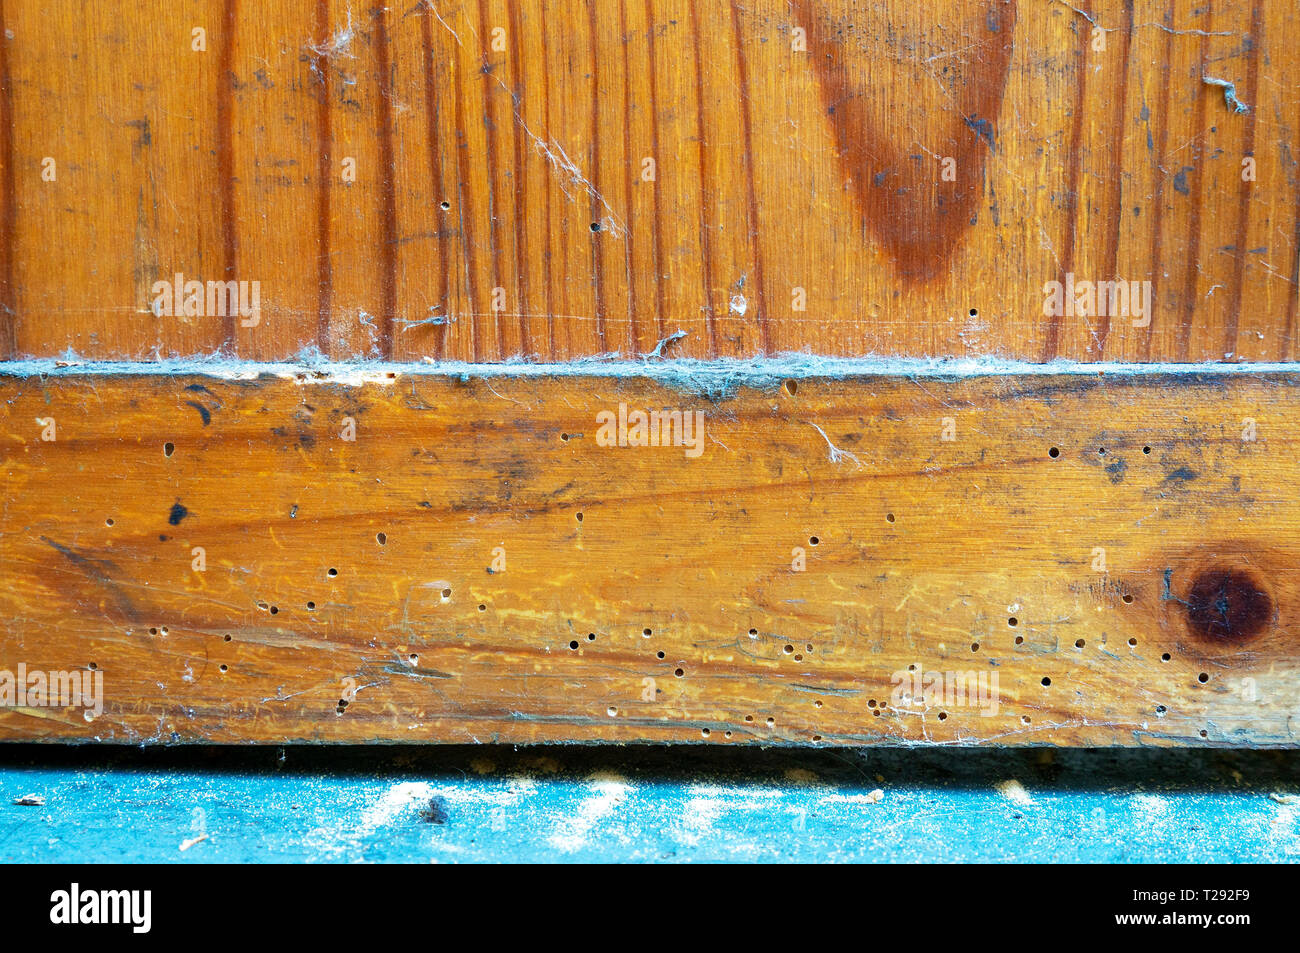 Il Tarlo fori in mobili con polvere di legno sul pavimento Foto Stock